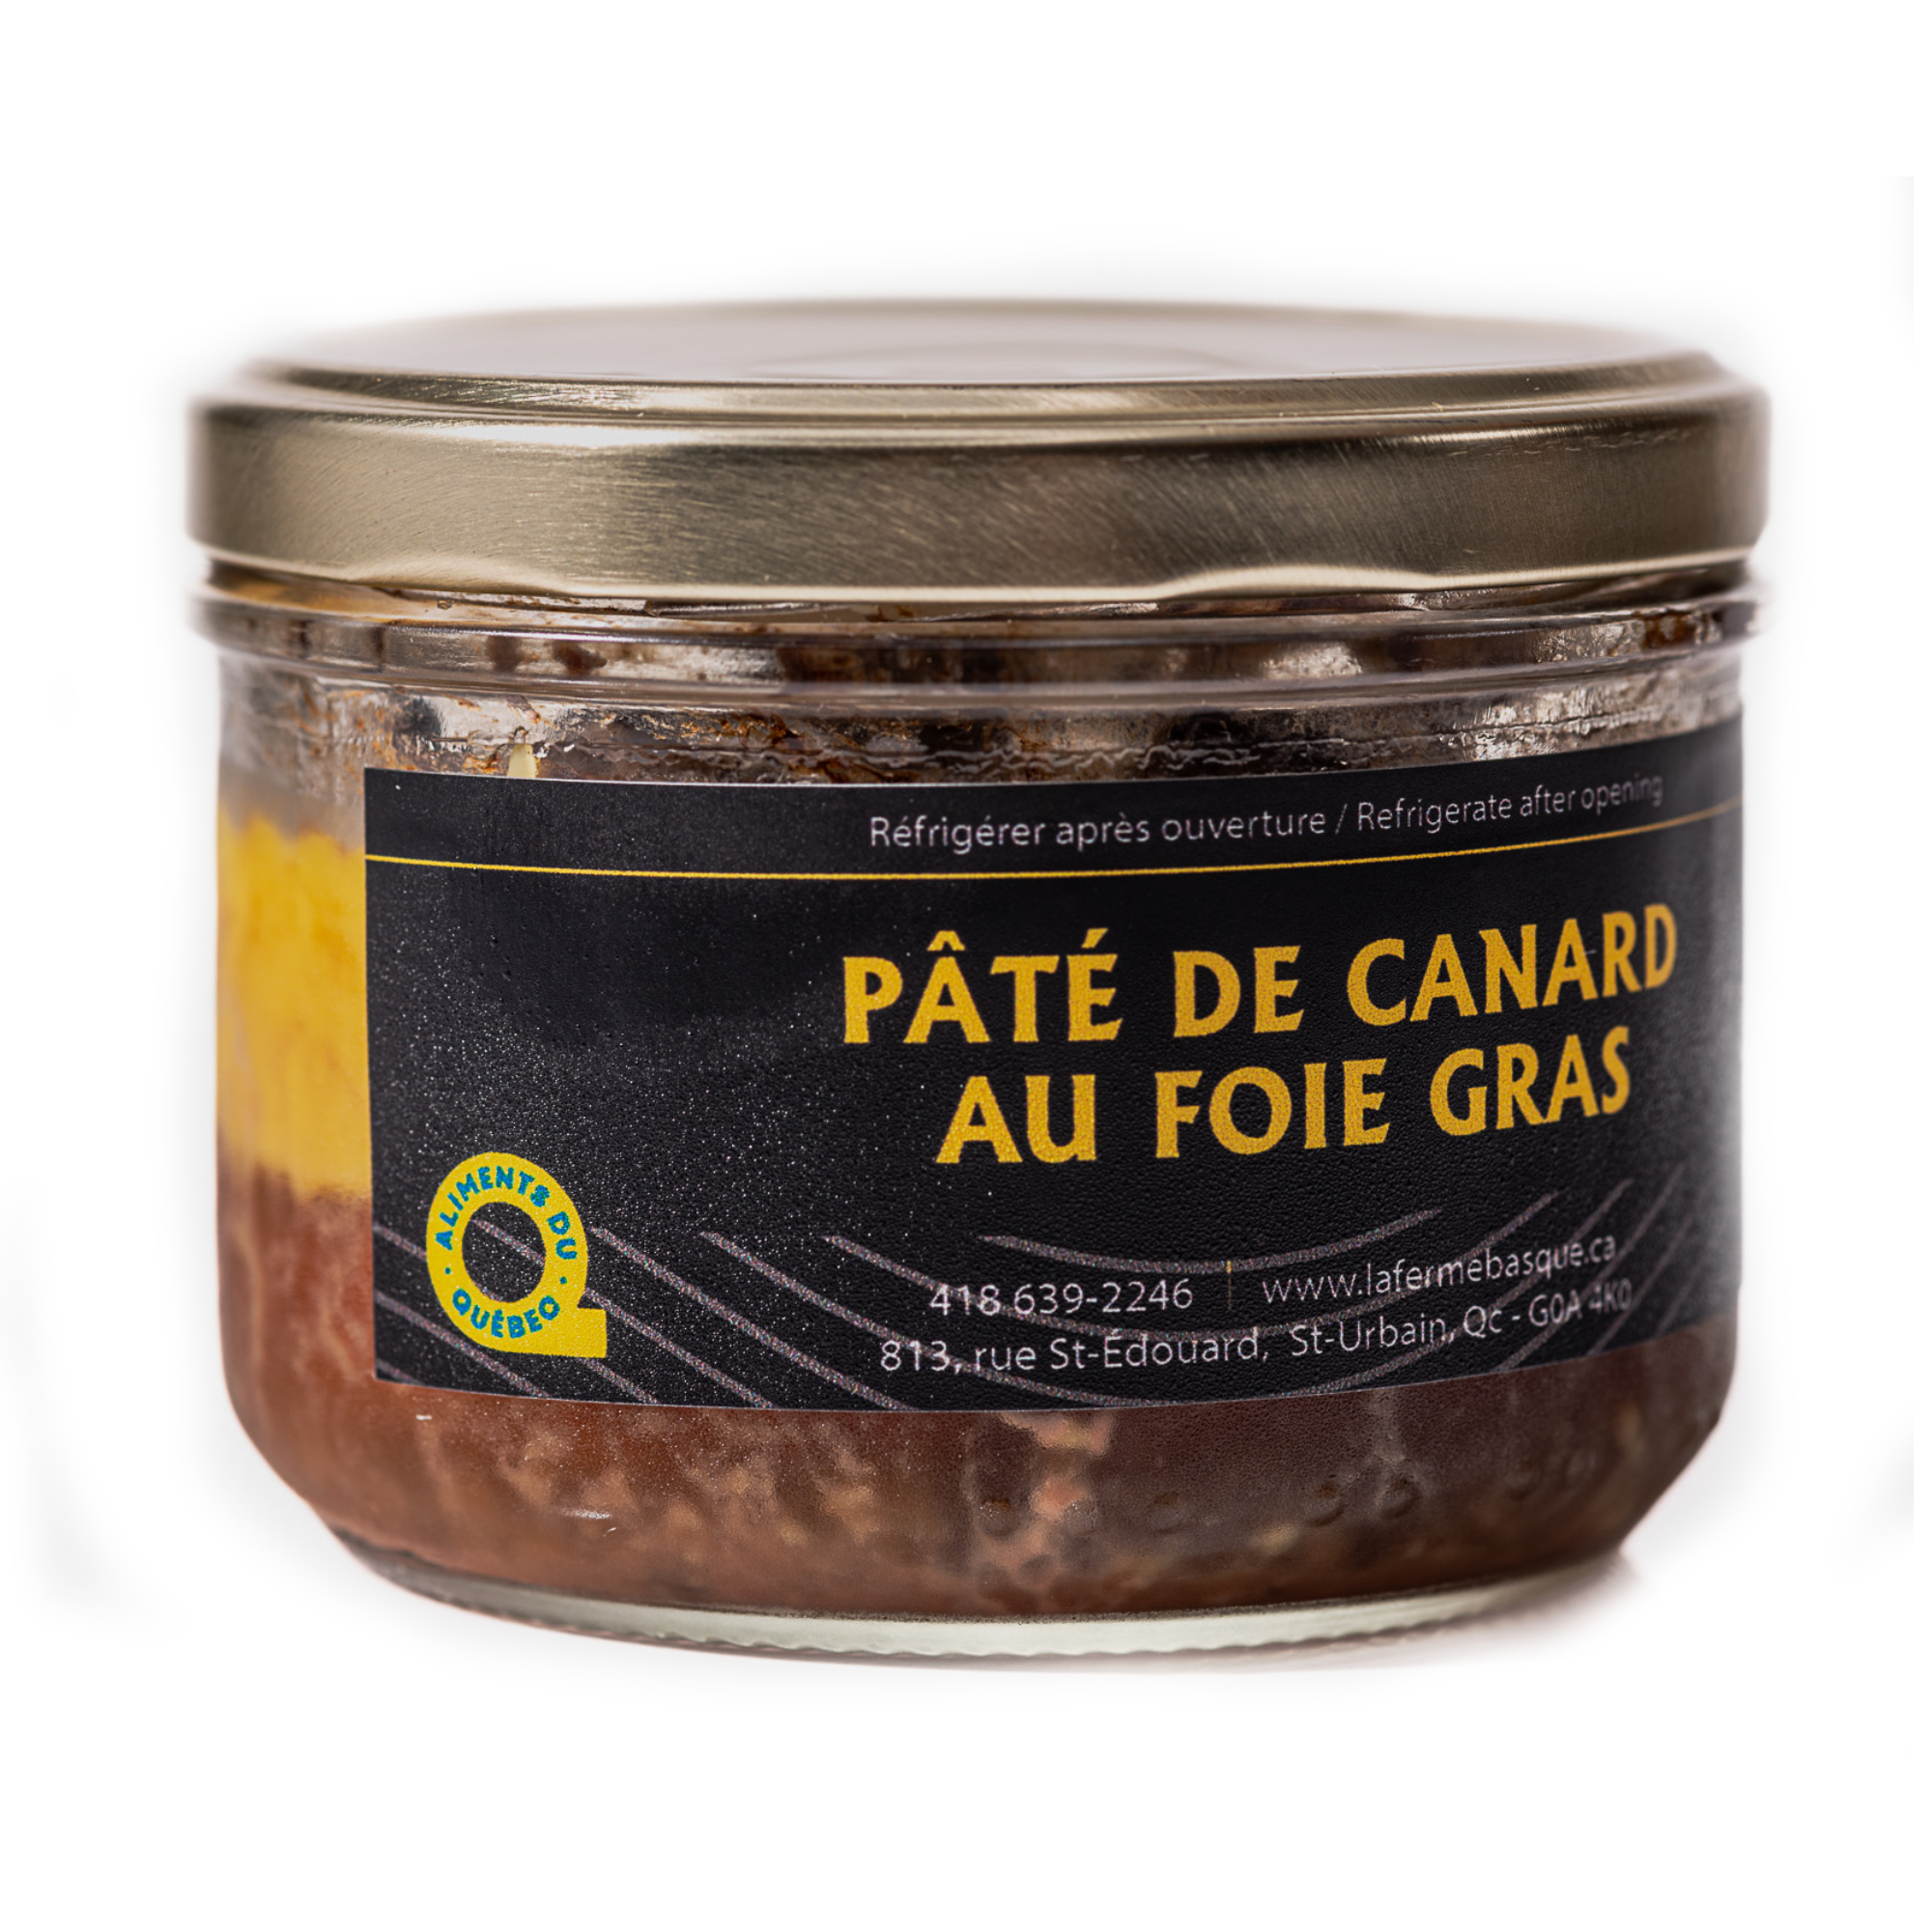 Pâté de canard au foie gras au format de 180g